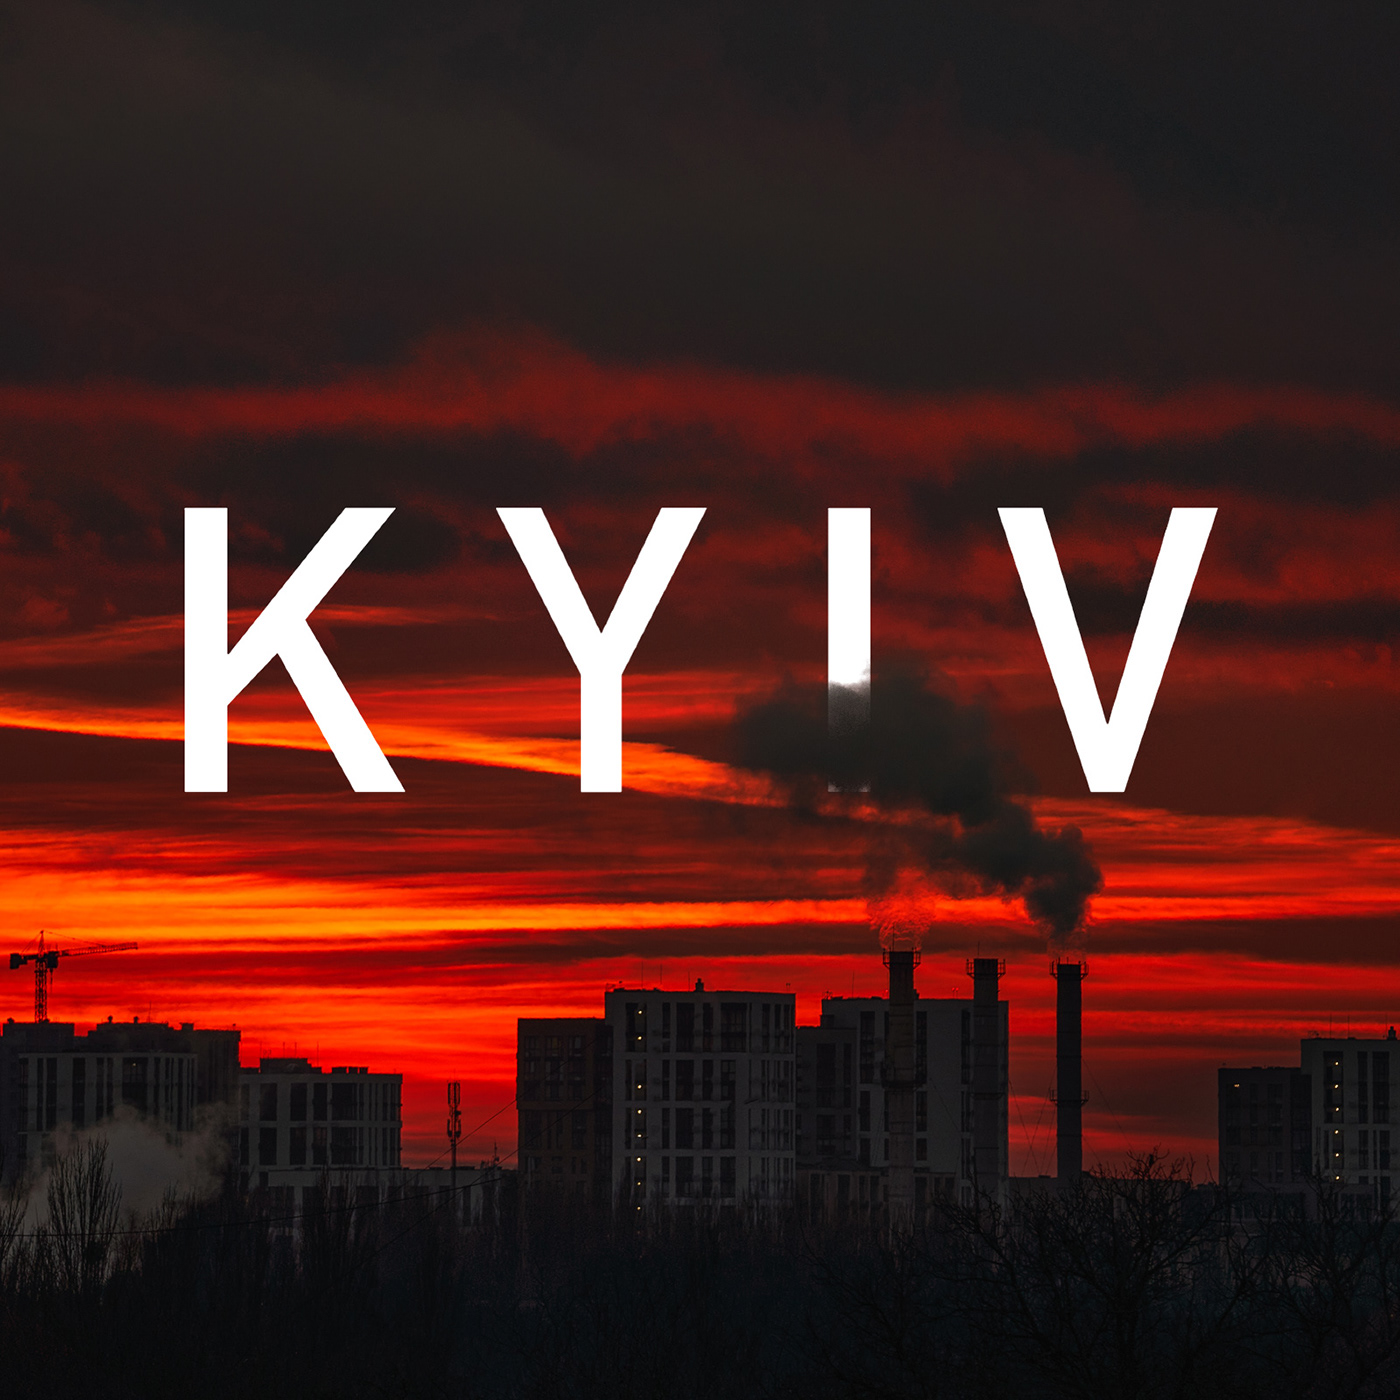 Kyiv cityscape Landscape sunset DAWN indestrial Neboteka red SKY Sun